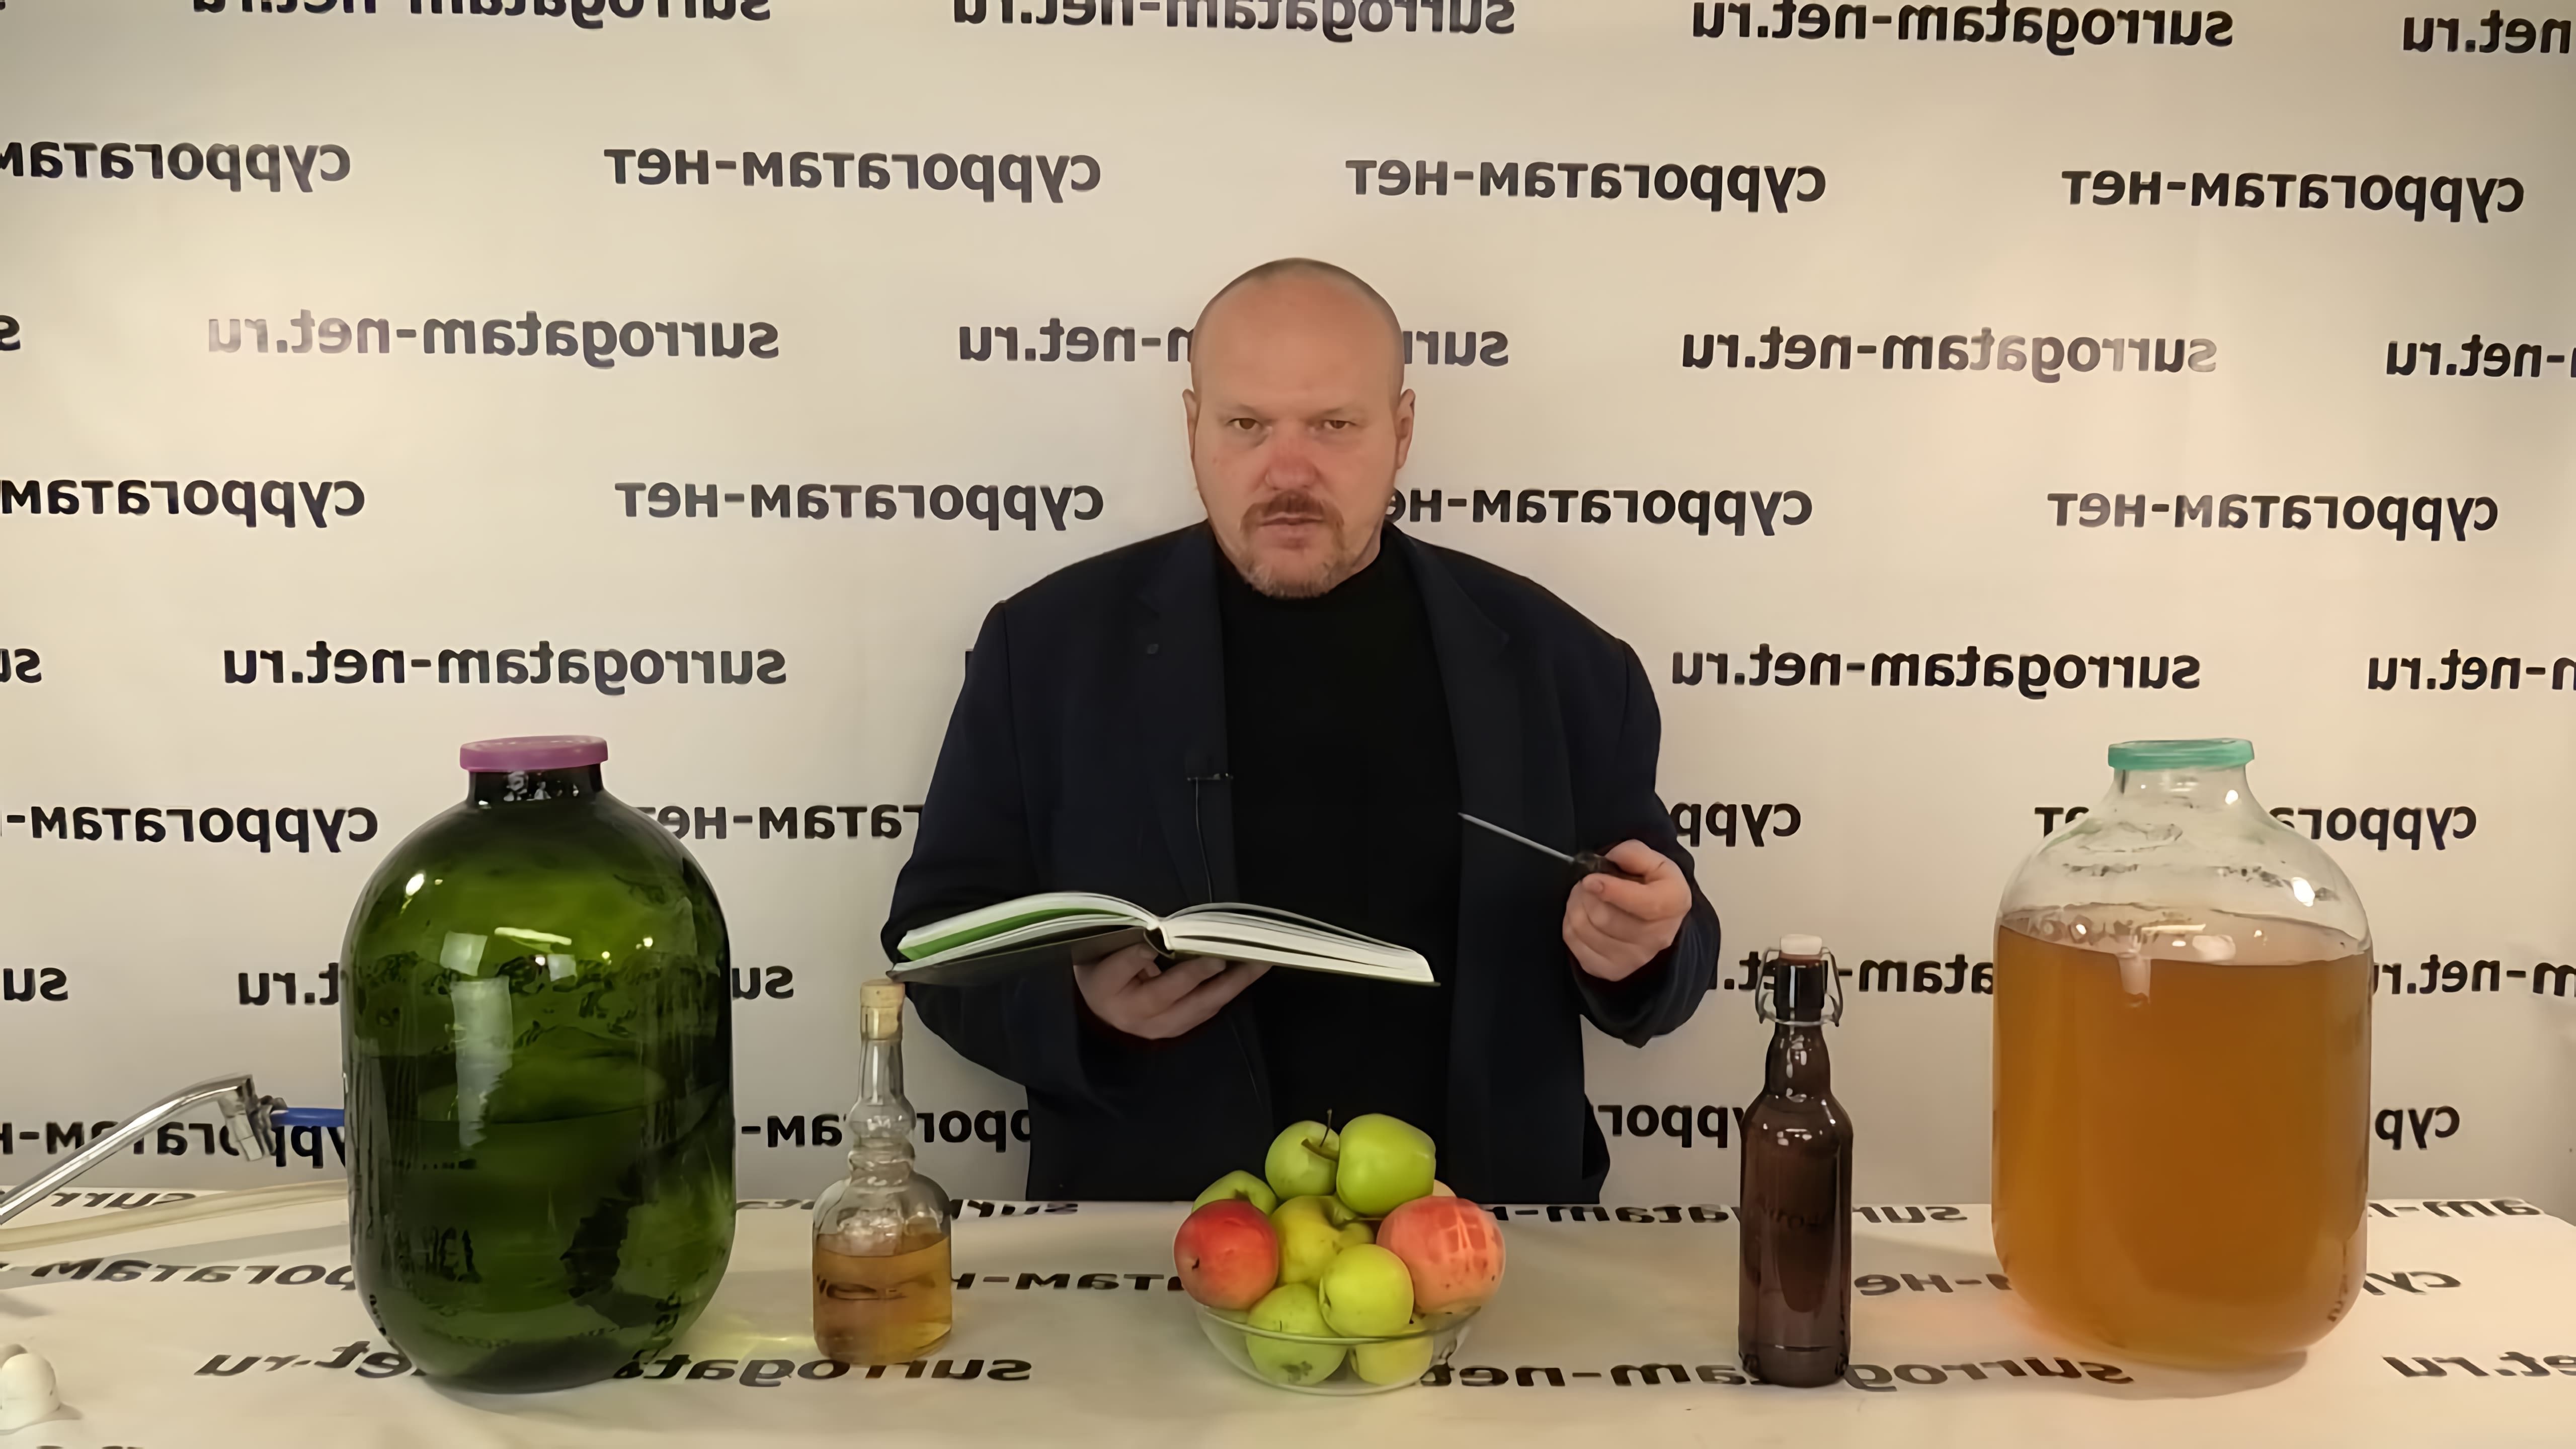 В этом видео Дмитрий Fresco, владелец и ведущий информационного канала, рассказывает о возможности приготовления алкогольных напитков из яблок